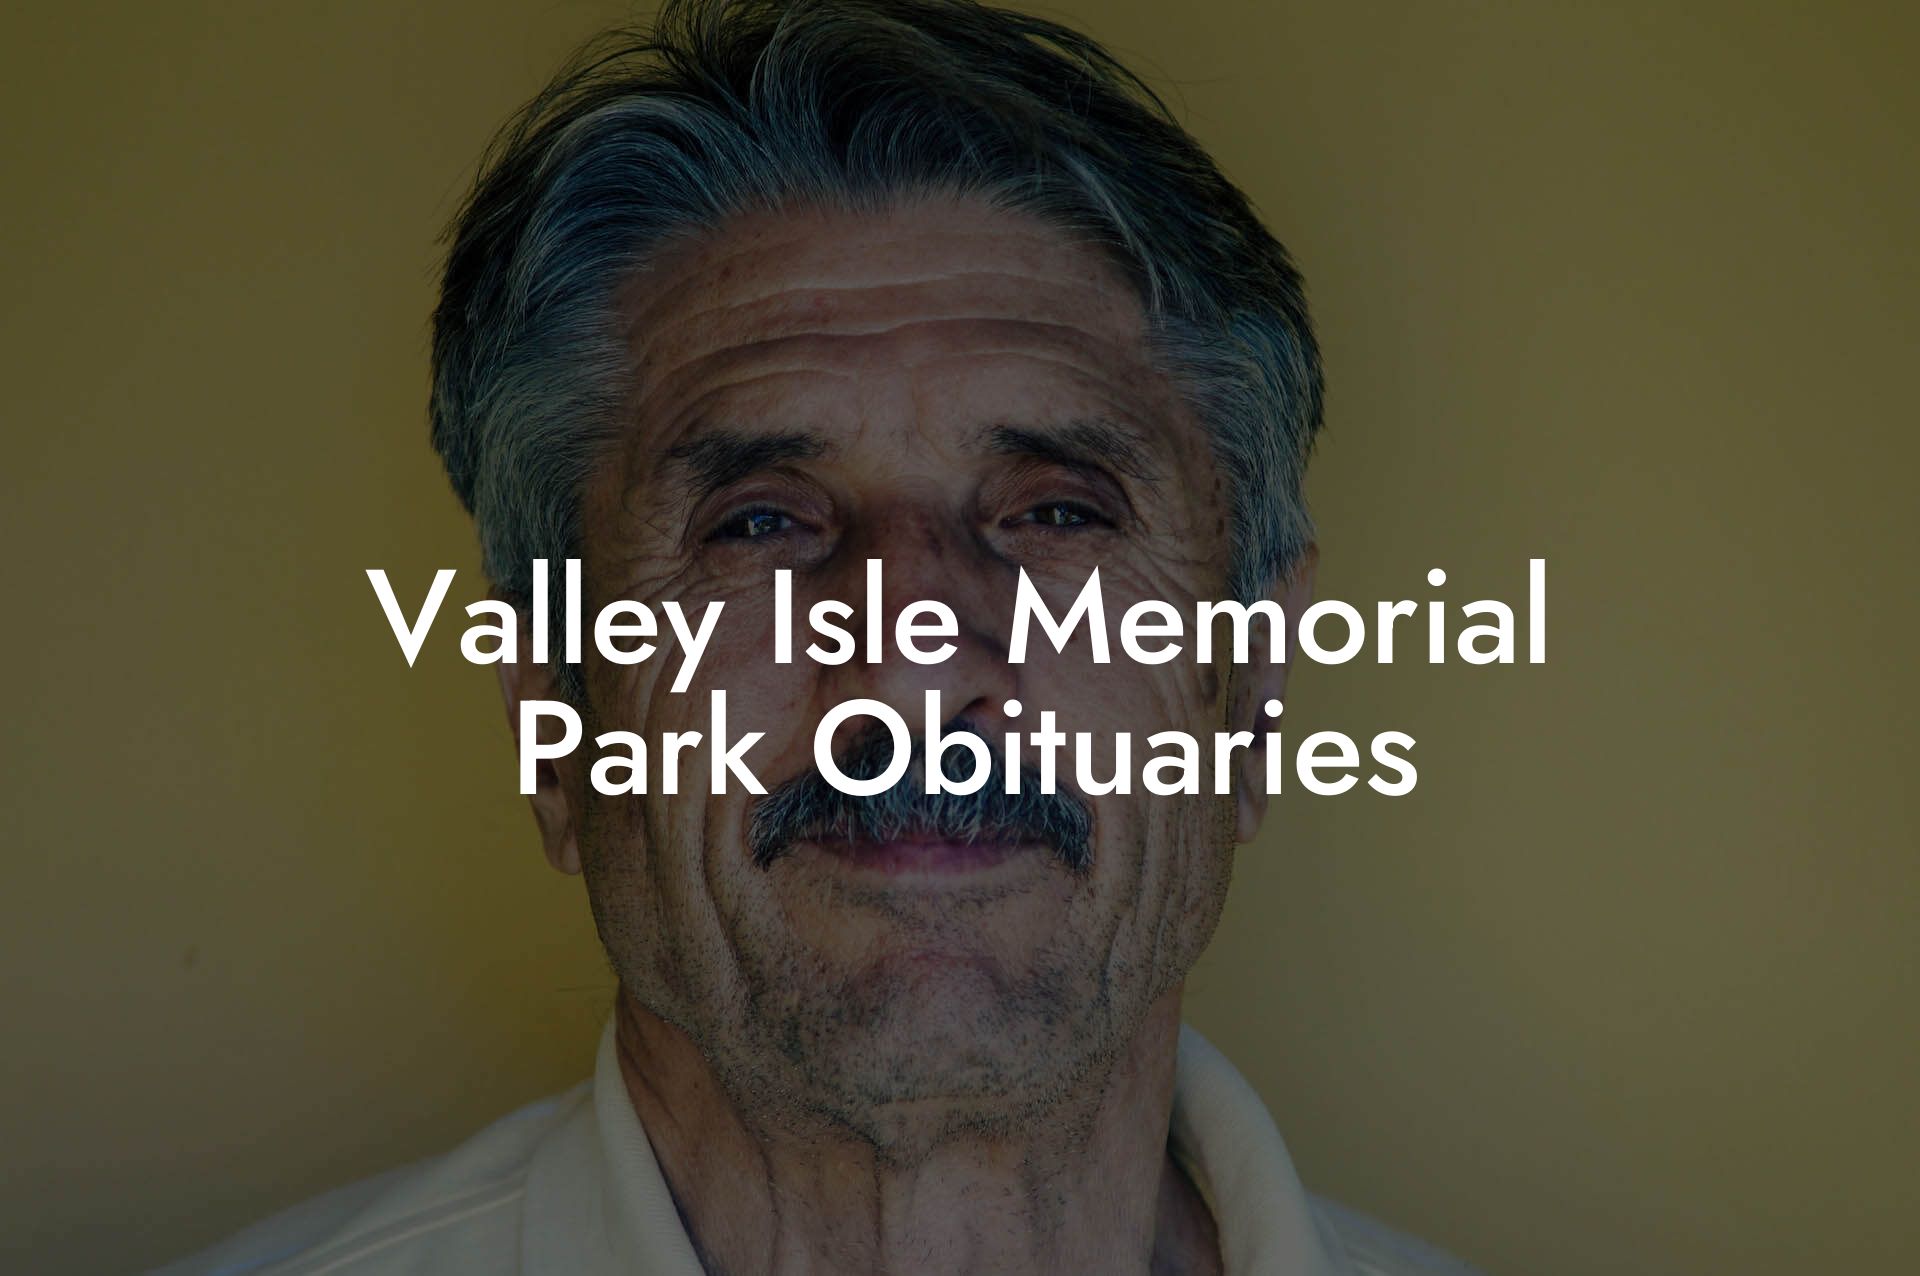 Valley Isle Memorial Park Obituaries